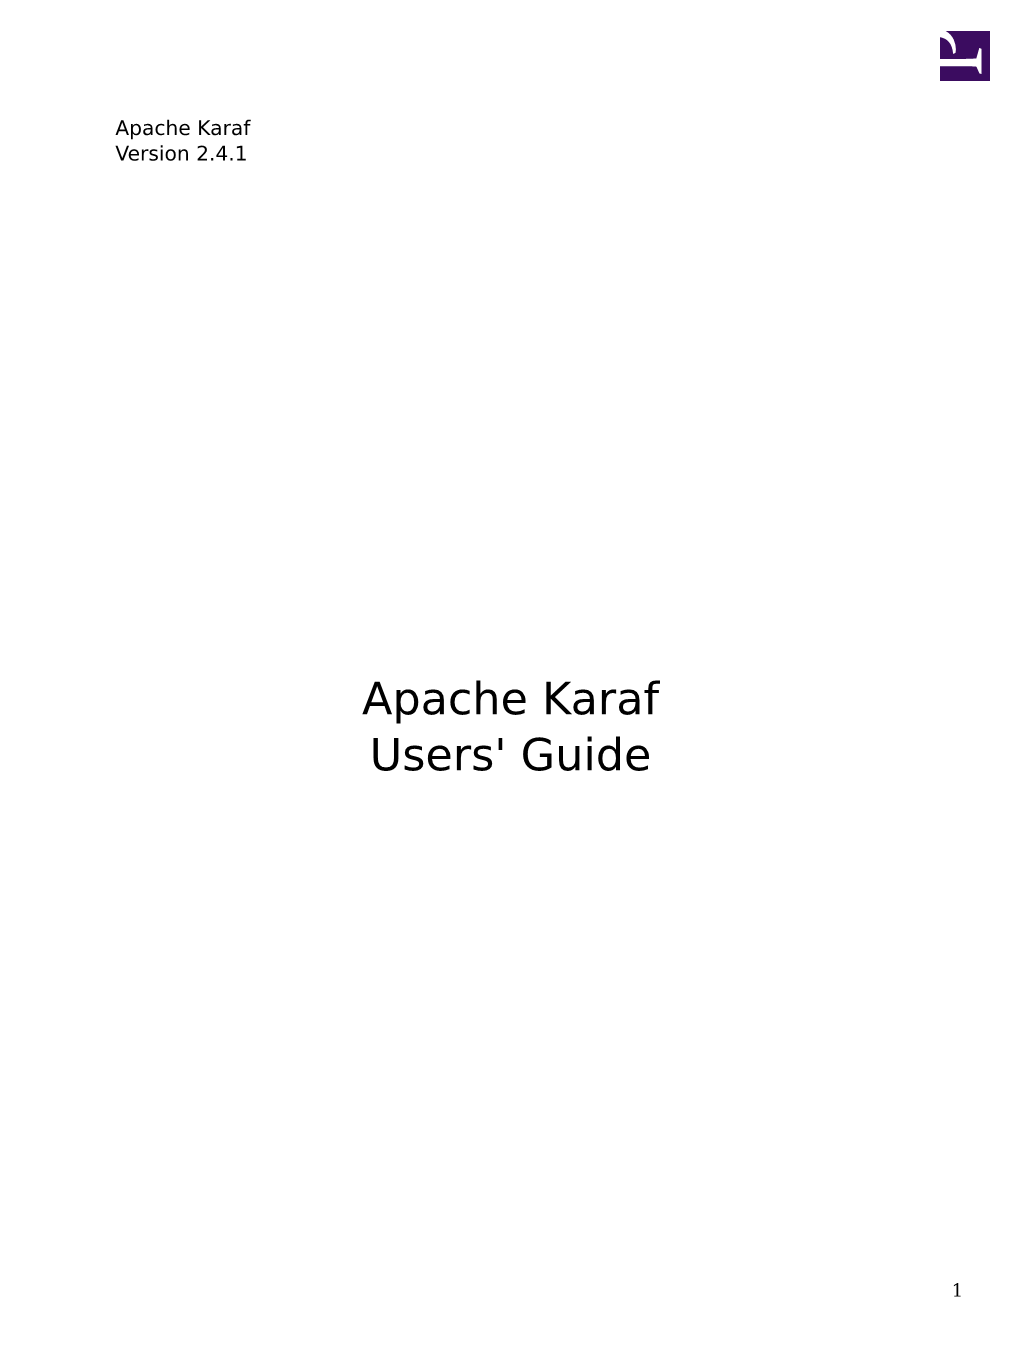 Apache Karaf 2.4.1 Guides